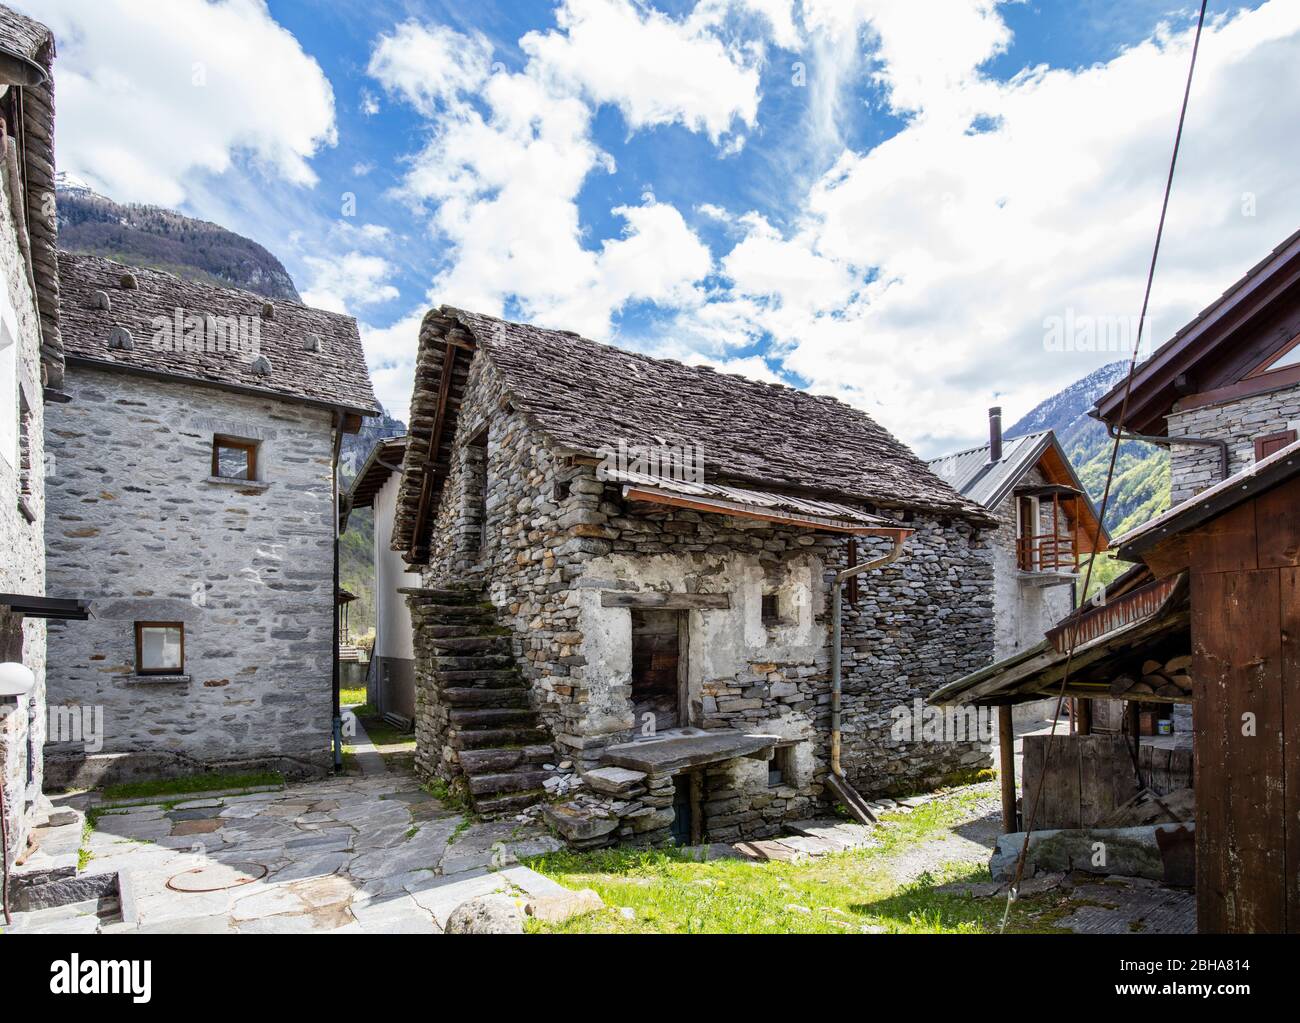 Switzerland, Alps, Ticino, Locarno, Verzasca Valley, Brione Verzasca, Rustico, old house Stock Photo